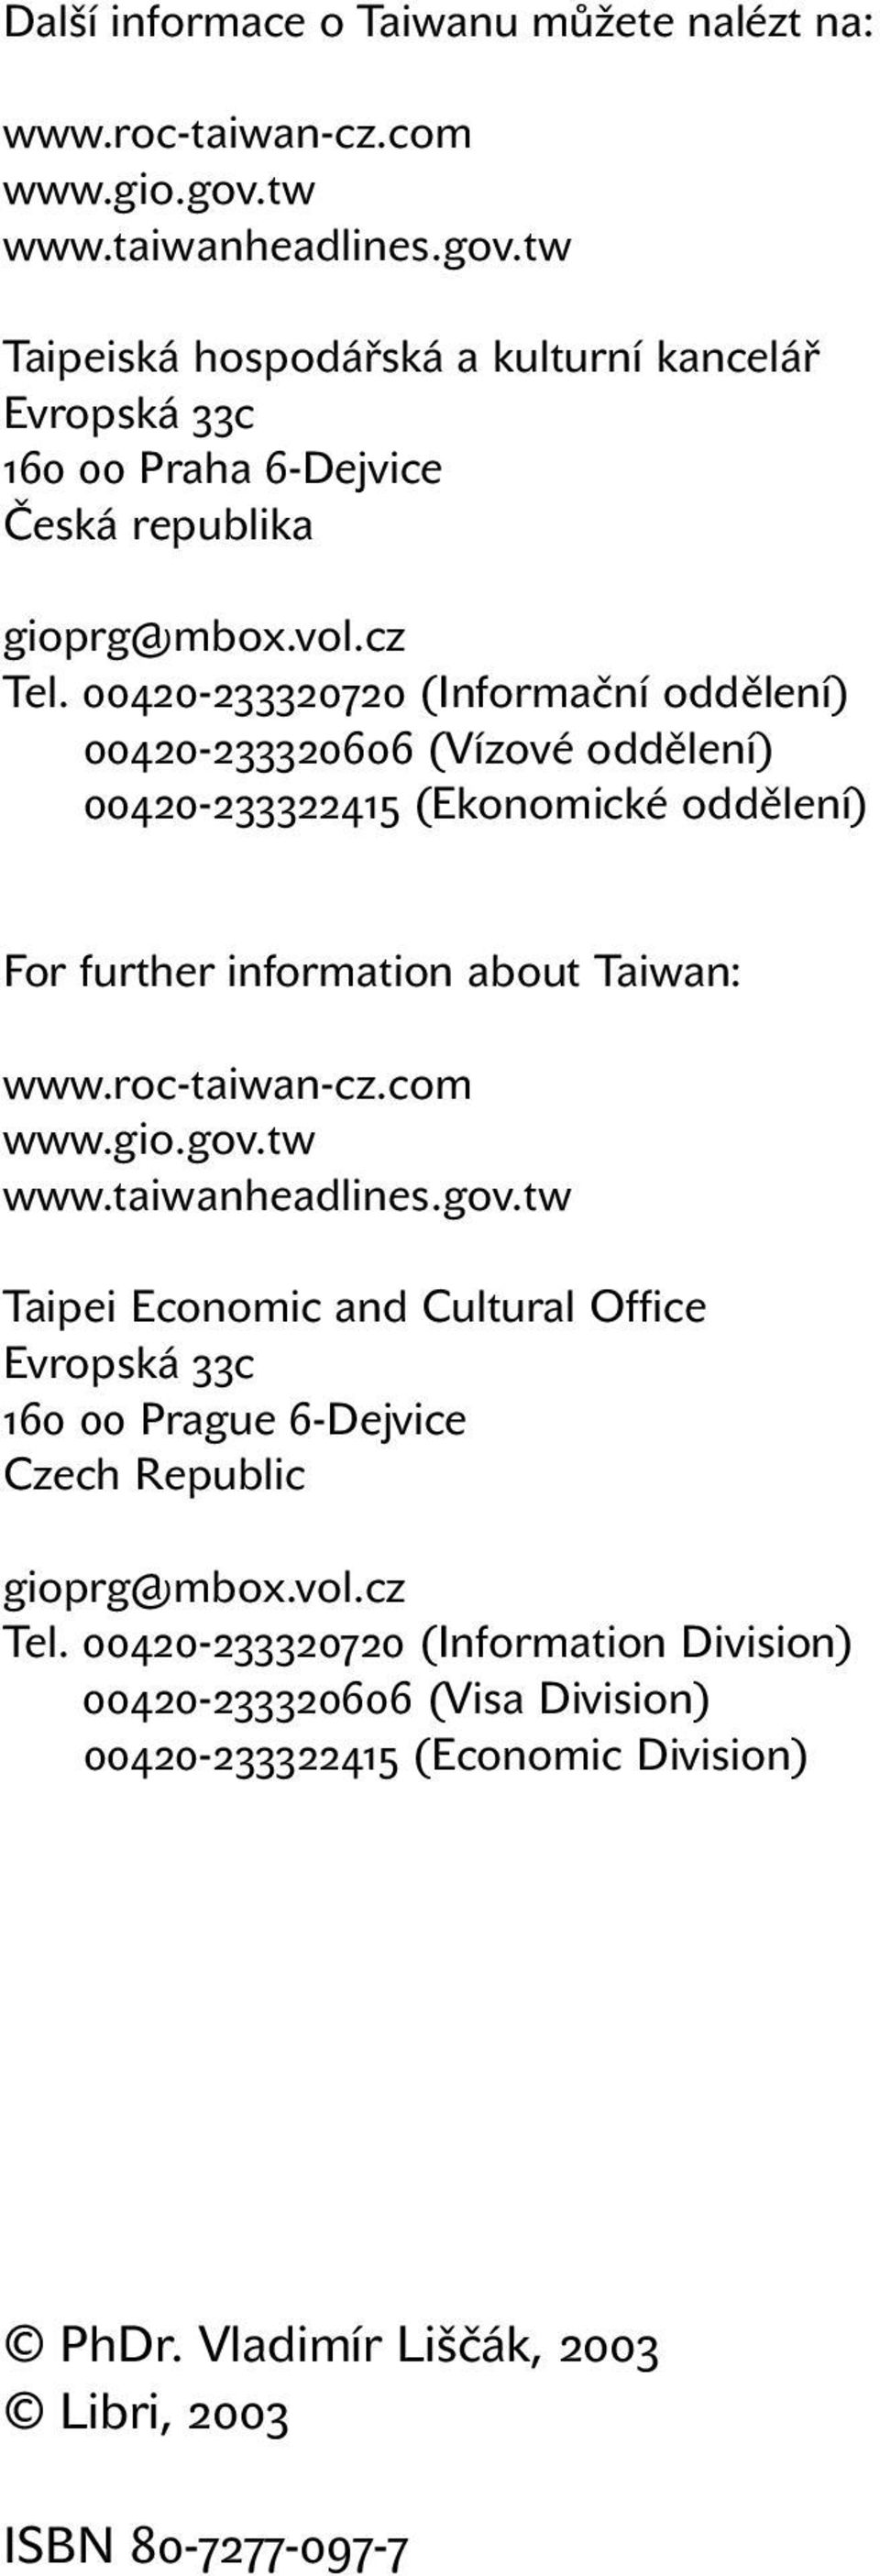 00420-233320720 (Informační oddělení) Tel. 00420-233320606 (Vízové oddělení) Tel. 00420-233322415 (Ekonomické oddělení) For further information about Taiwan: www.roc-taiwan-cz.com www.